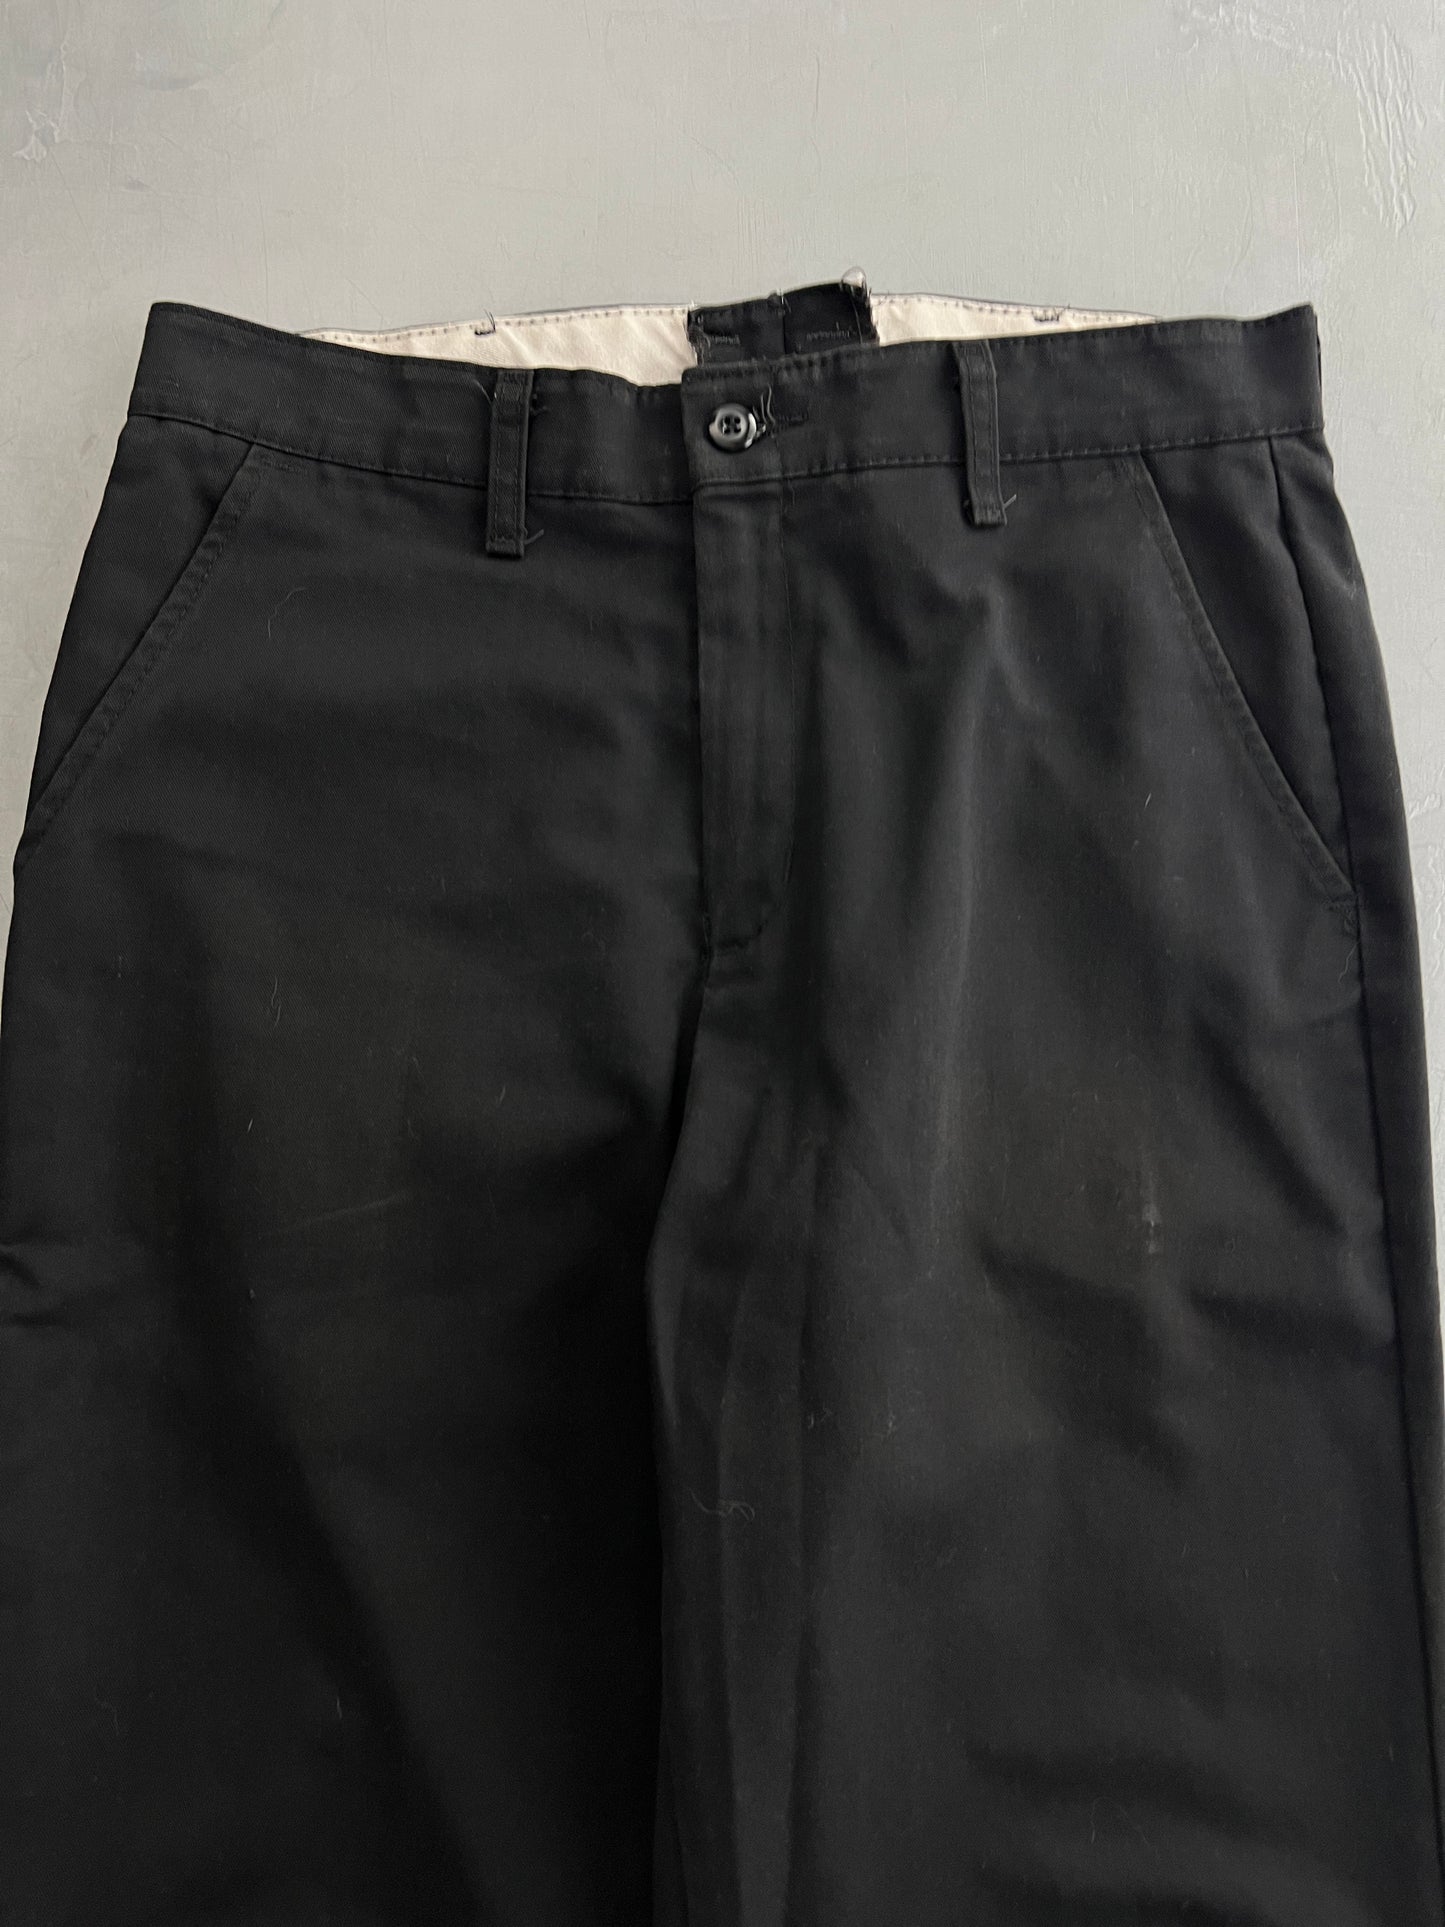 Redkap Work Pants [32"]